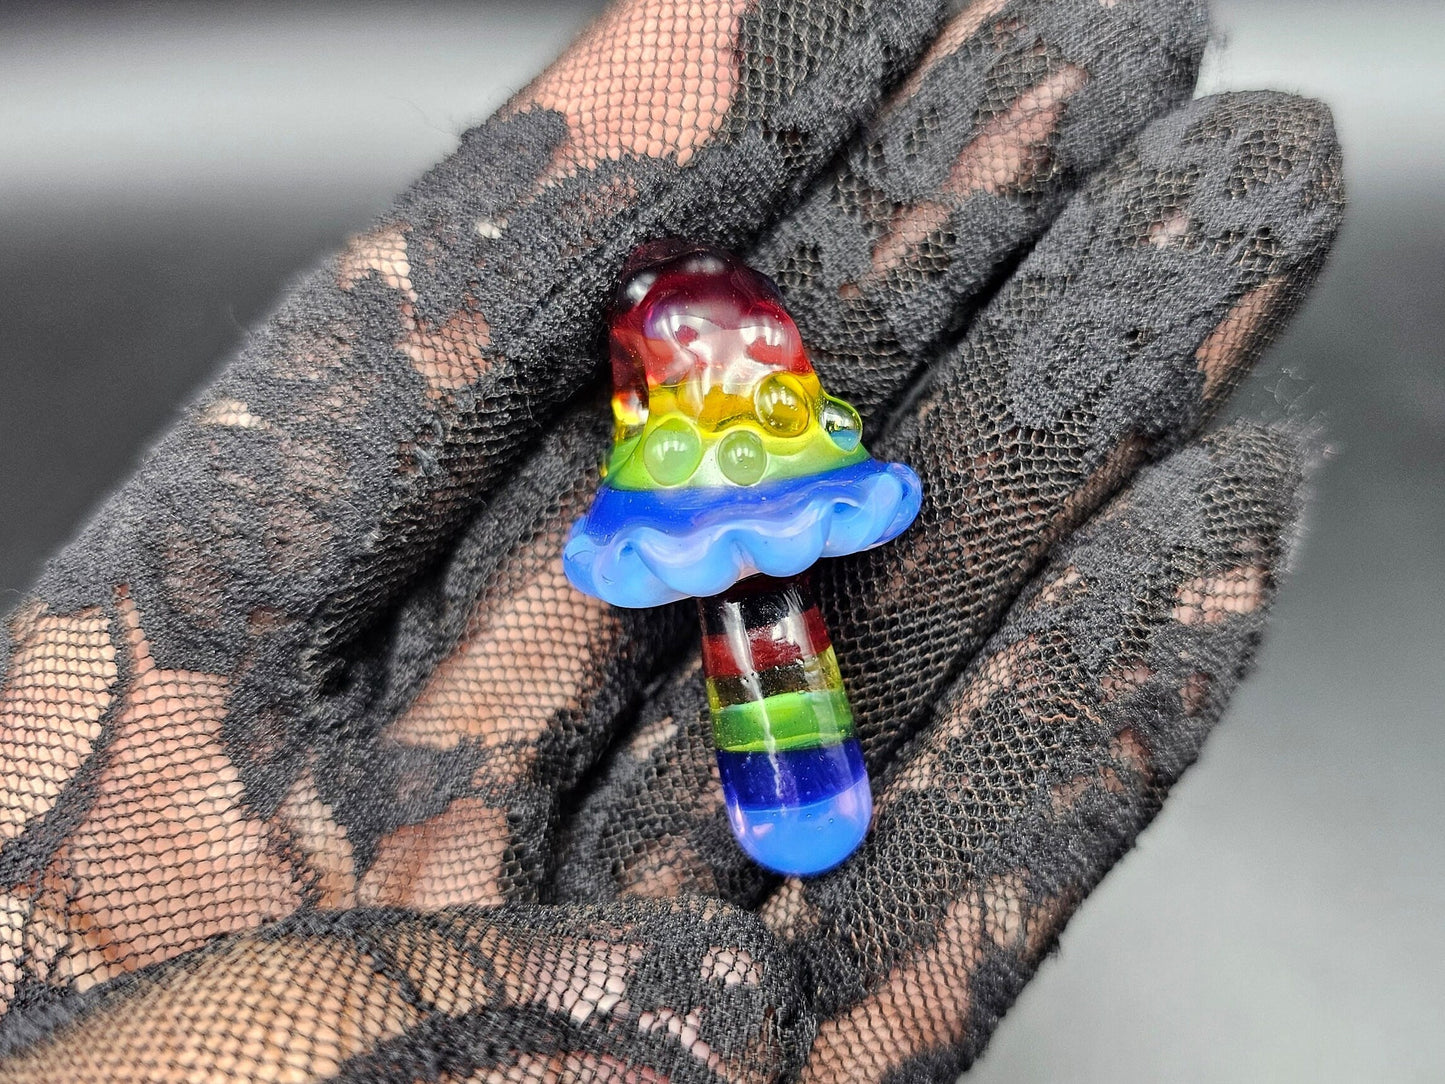 Double Rainbow Mushroom Pendant/ Shroom pendant / Hand Sculpted Glass Mushroom Necklace / Rainbow Shroom Pendant